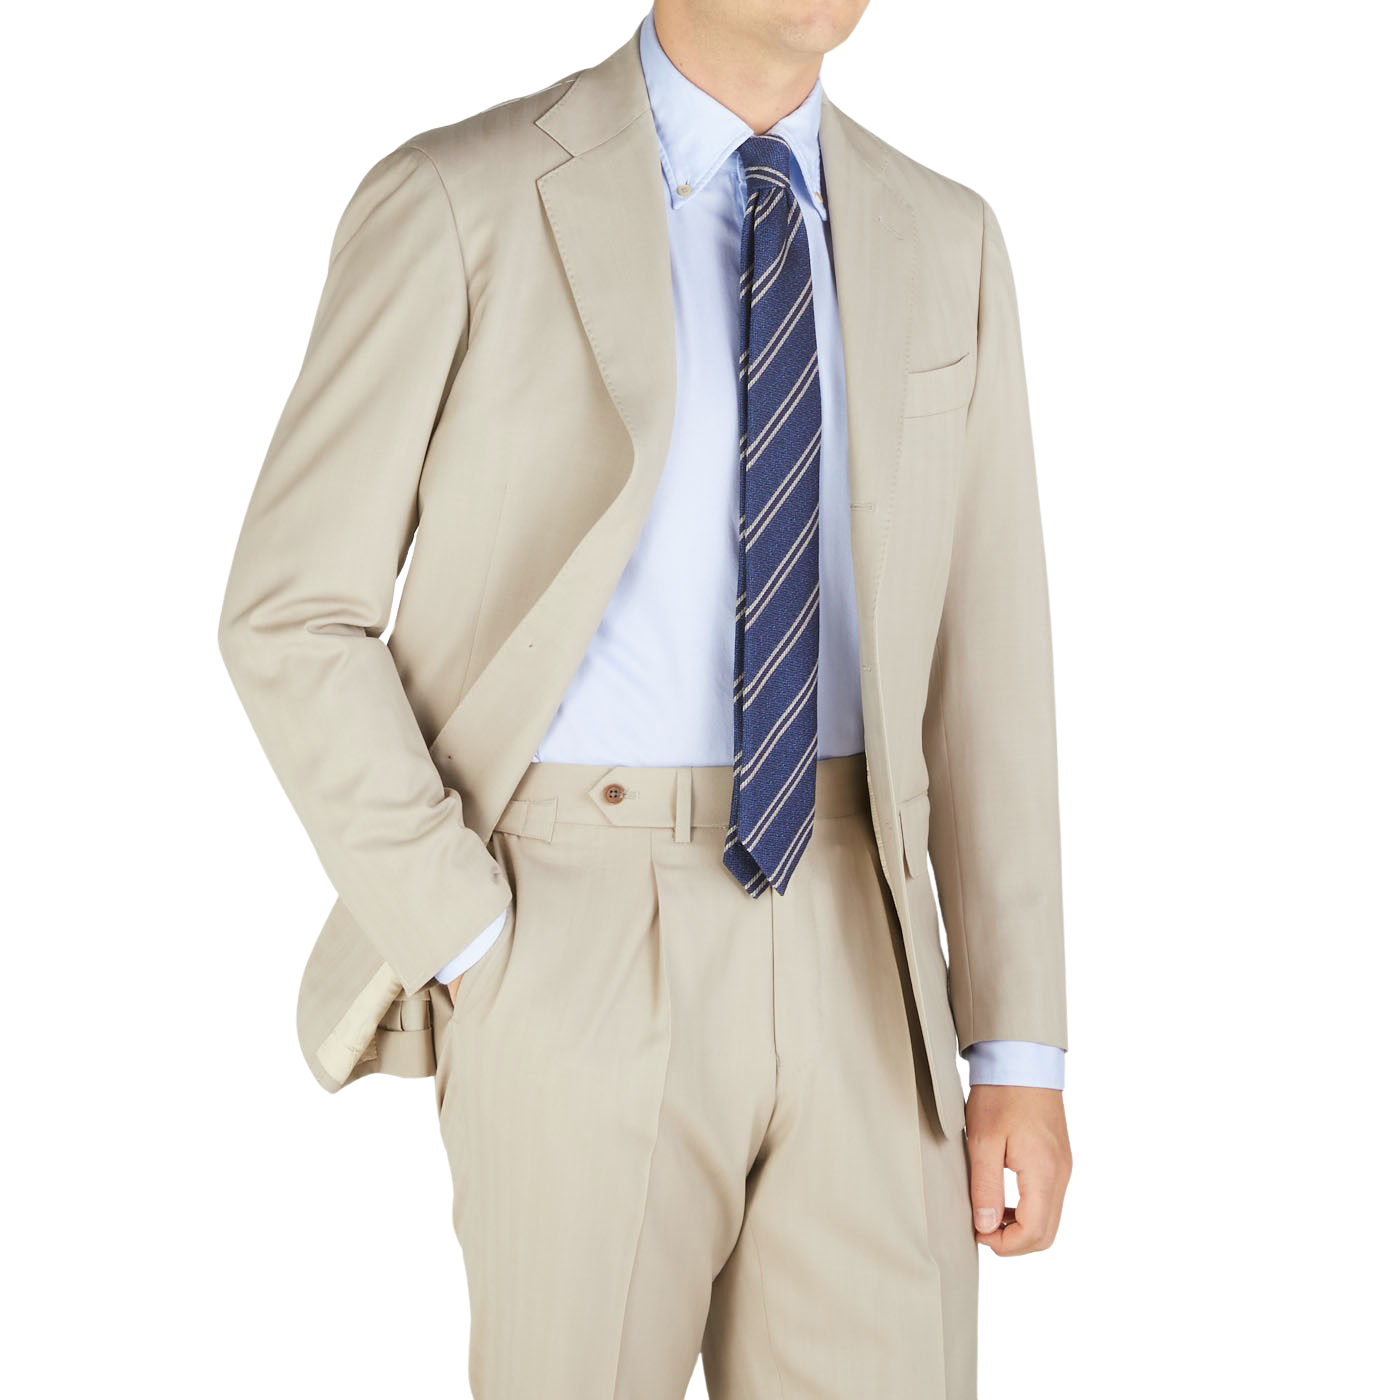 A man in a Light Beige Herringbone Wool Suit by Ring Jacket.